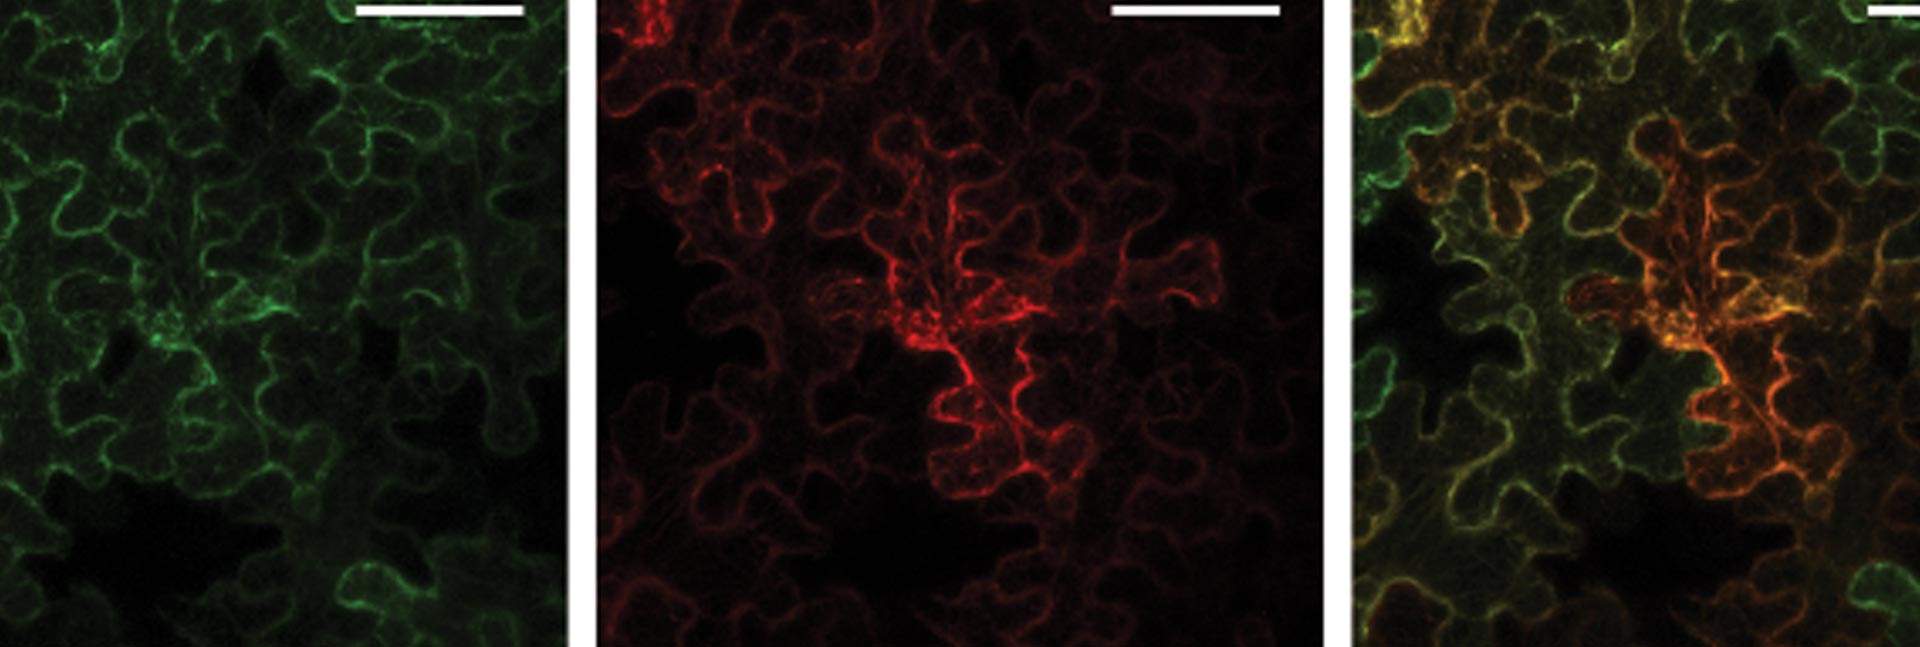 תא של Nicotiana benthamiana תחת מיקרוסקופ